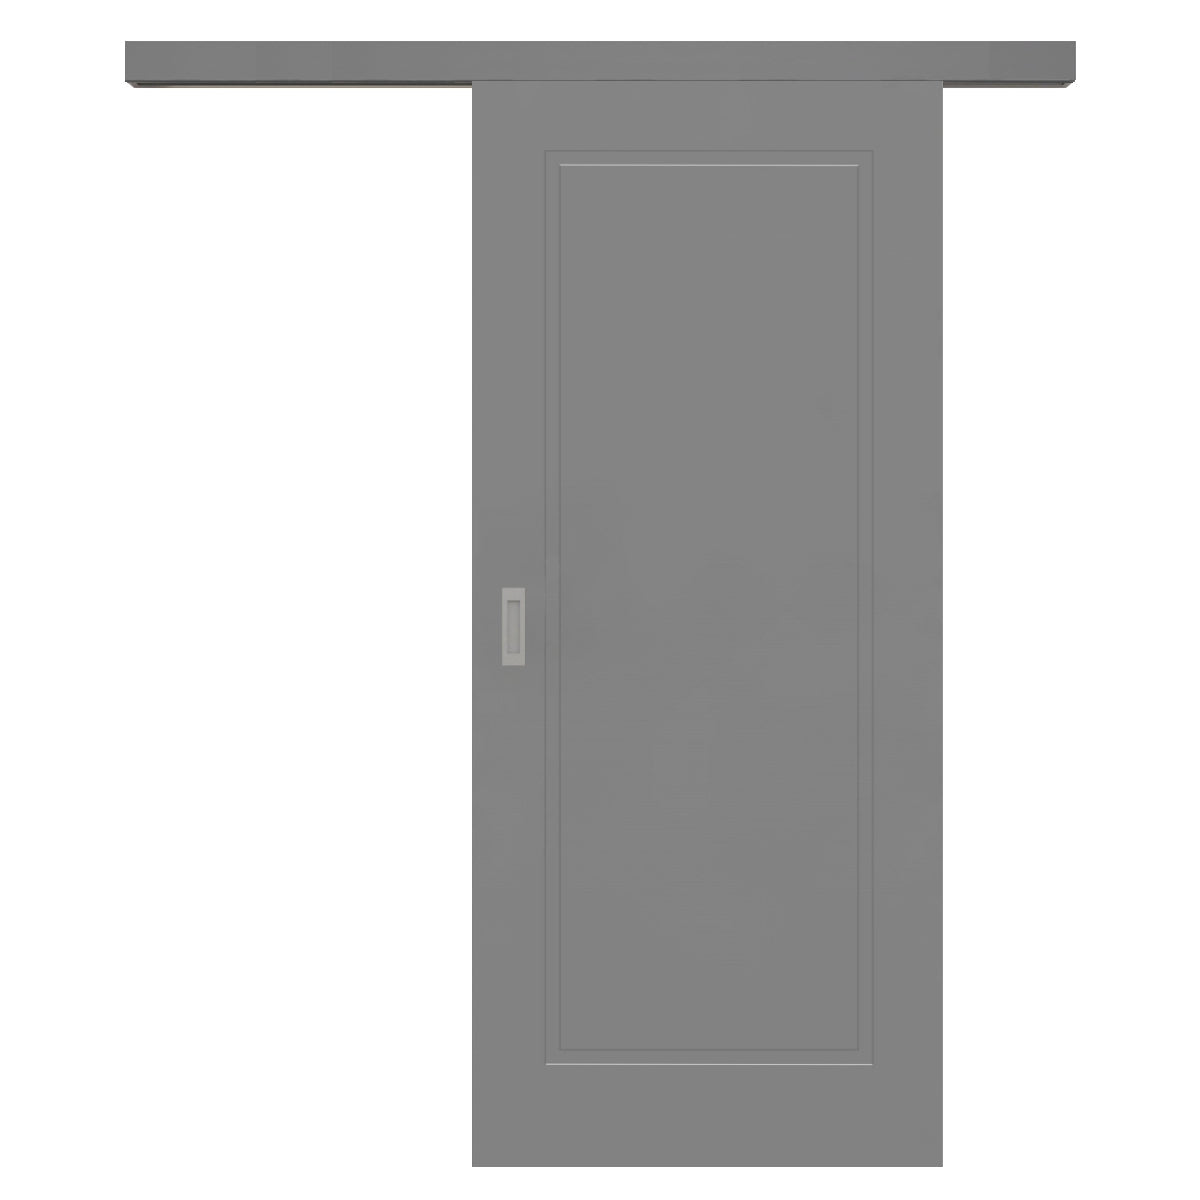 Schiebetür für Set mit grauem Laufkasten grau 1 Kassette - Modell Stiltür M17